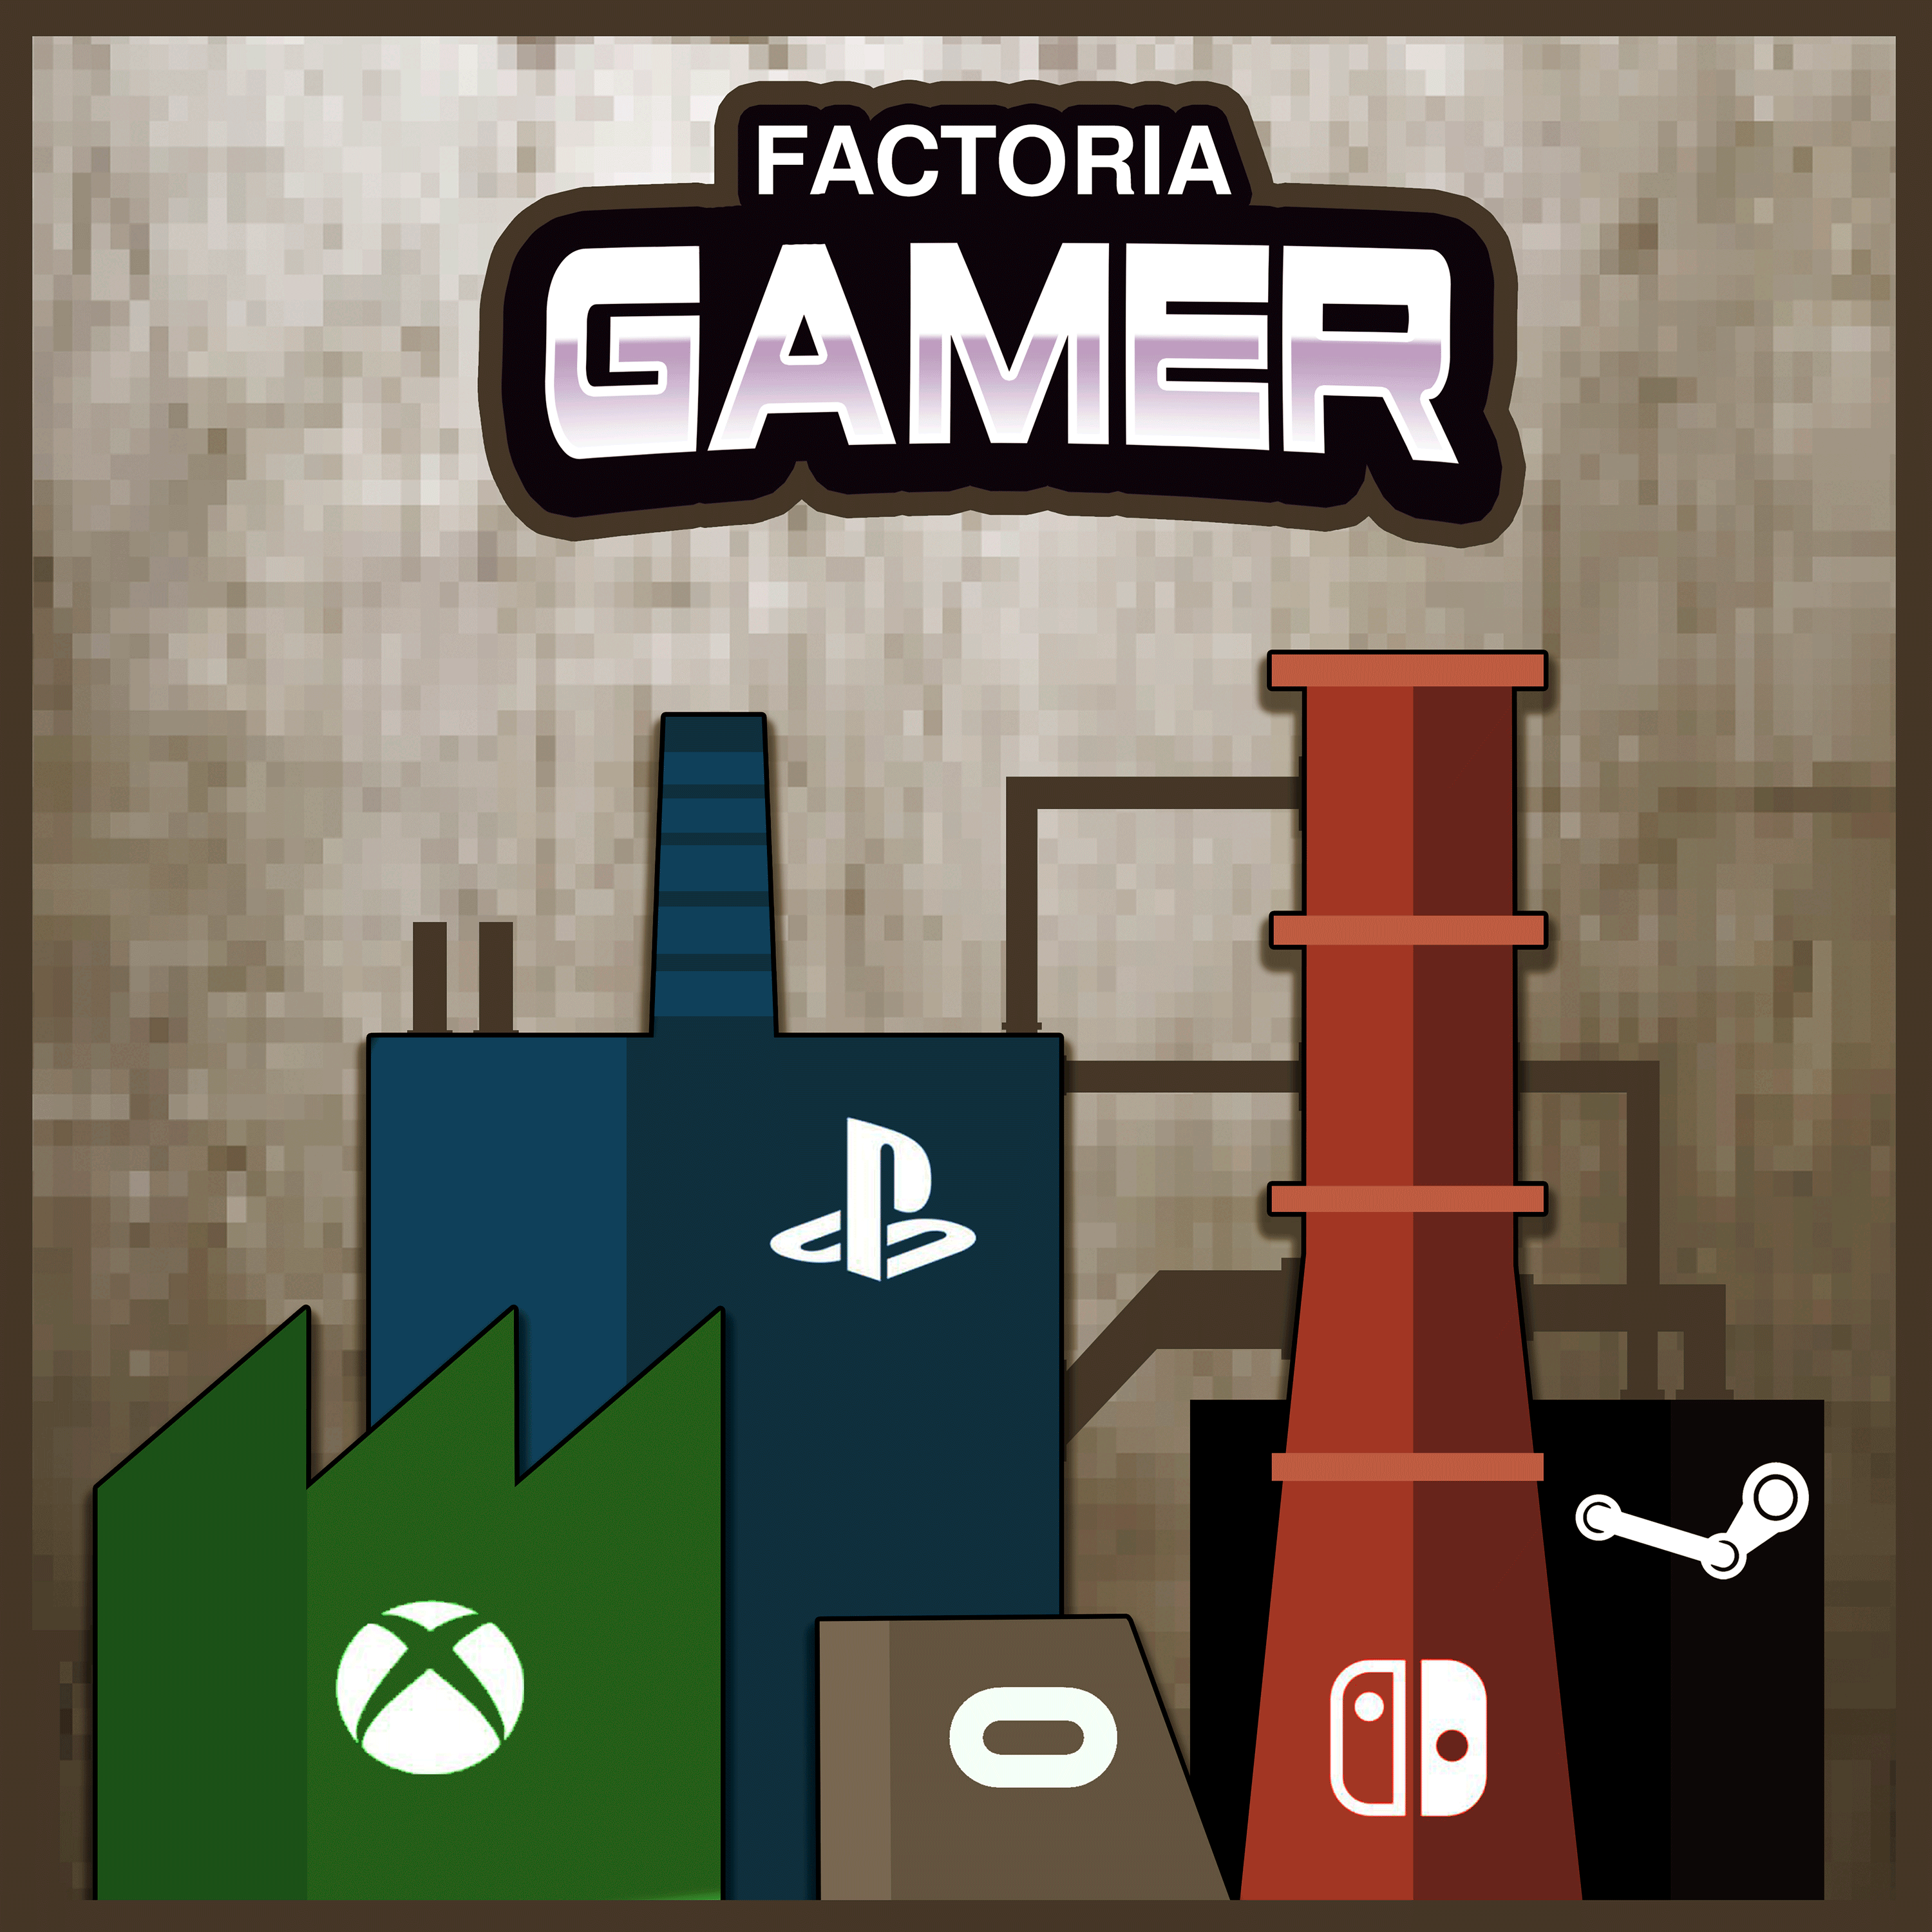 Factoria Gamer